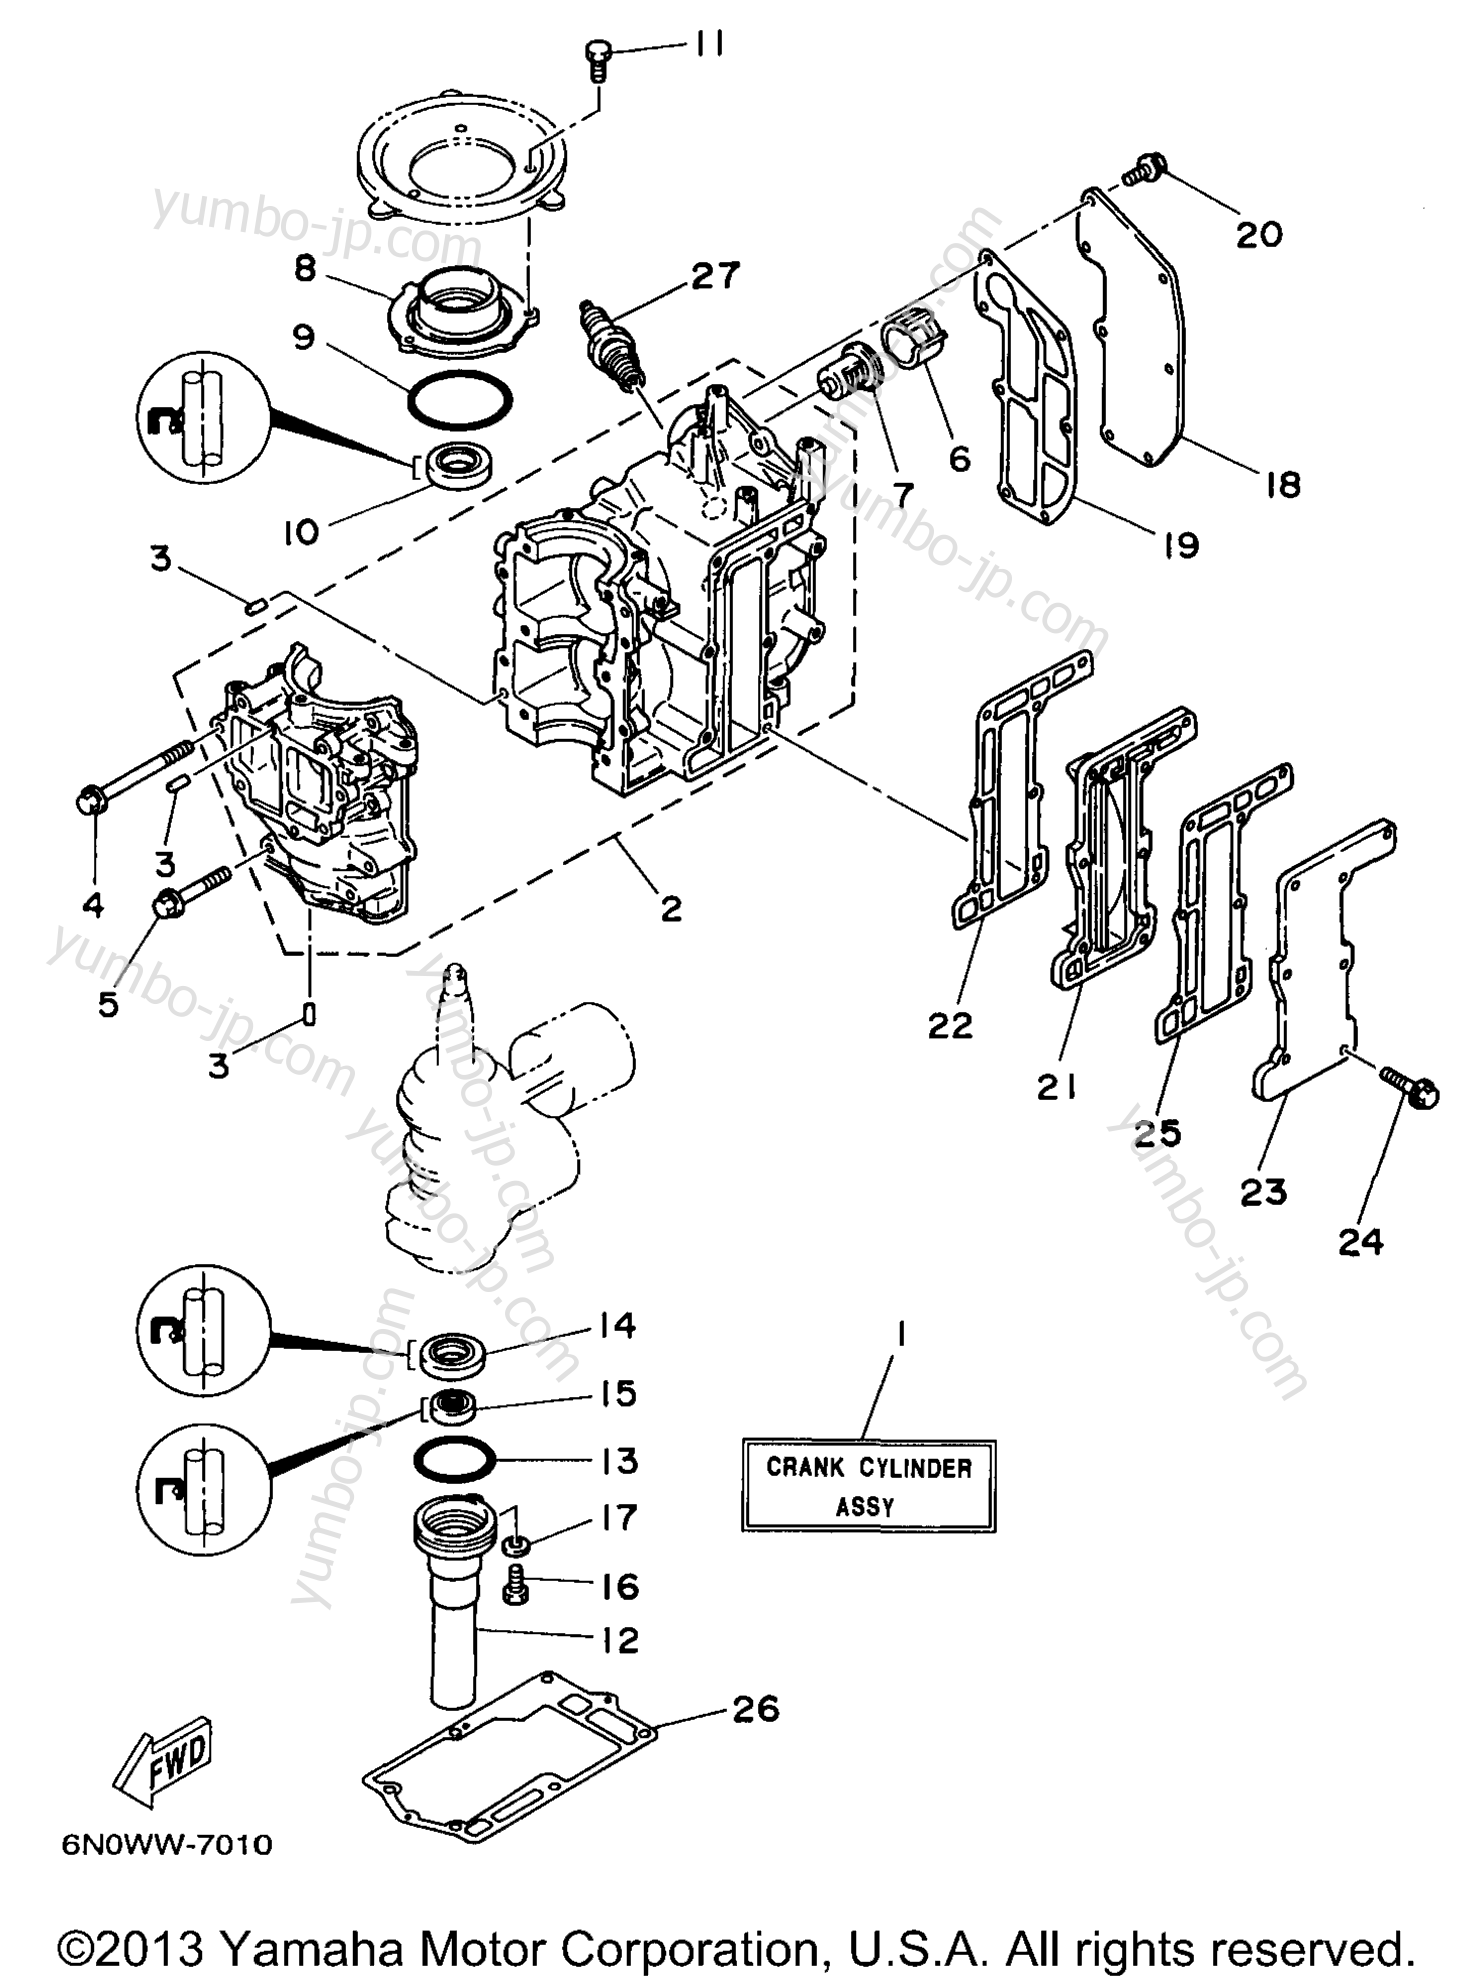 Cylinder Crankcase для лодочных моторов YAMAHA 6MLHV 1997 г.